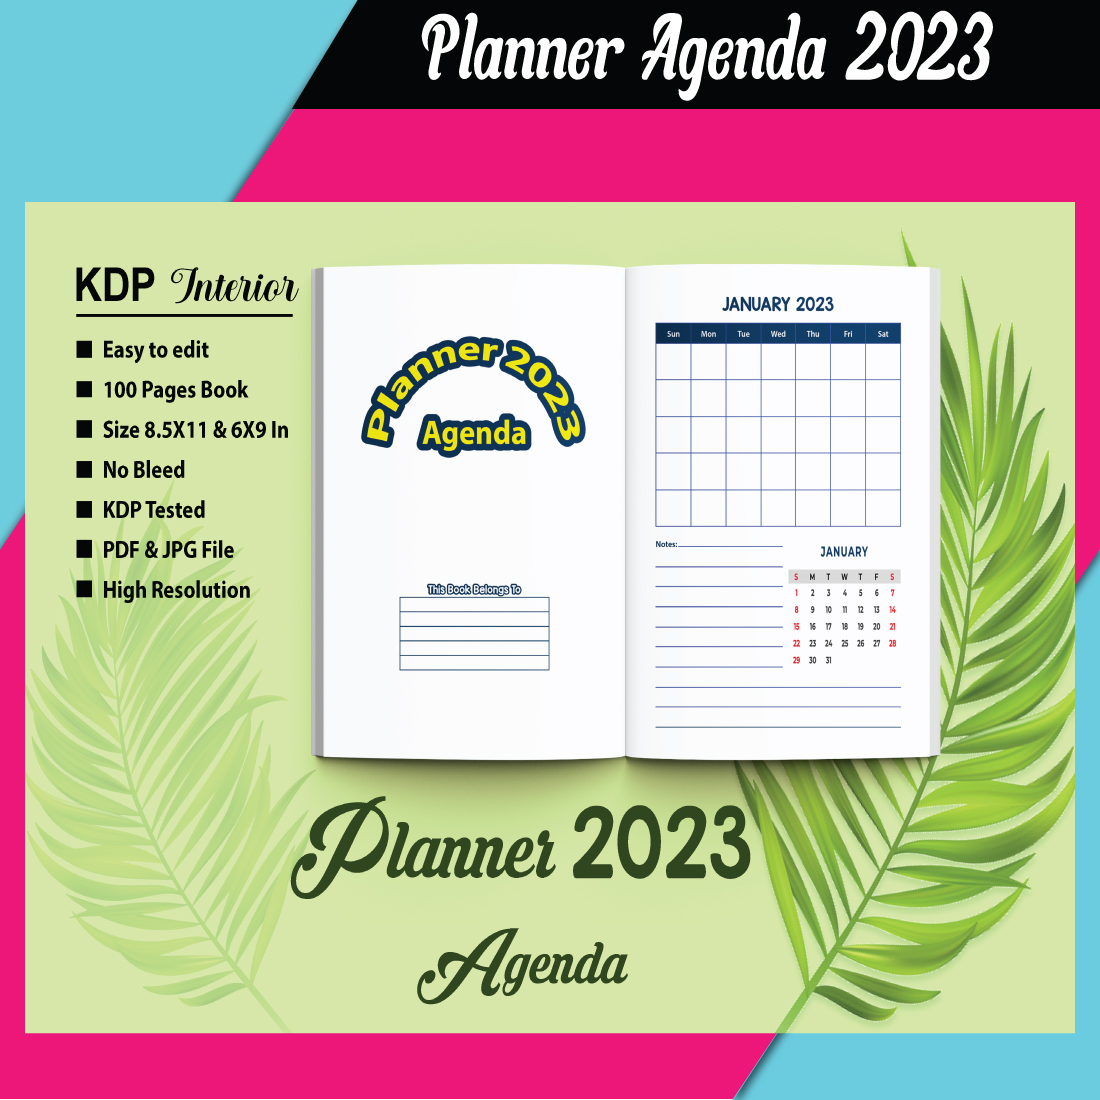 Planner Design KDP Interior preview image.